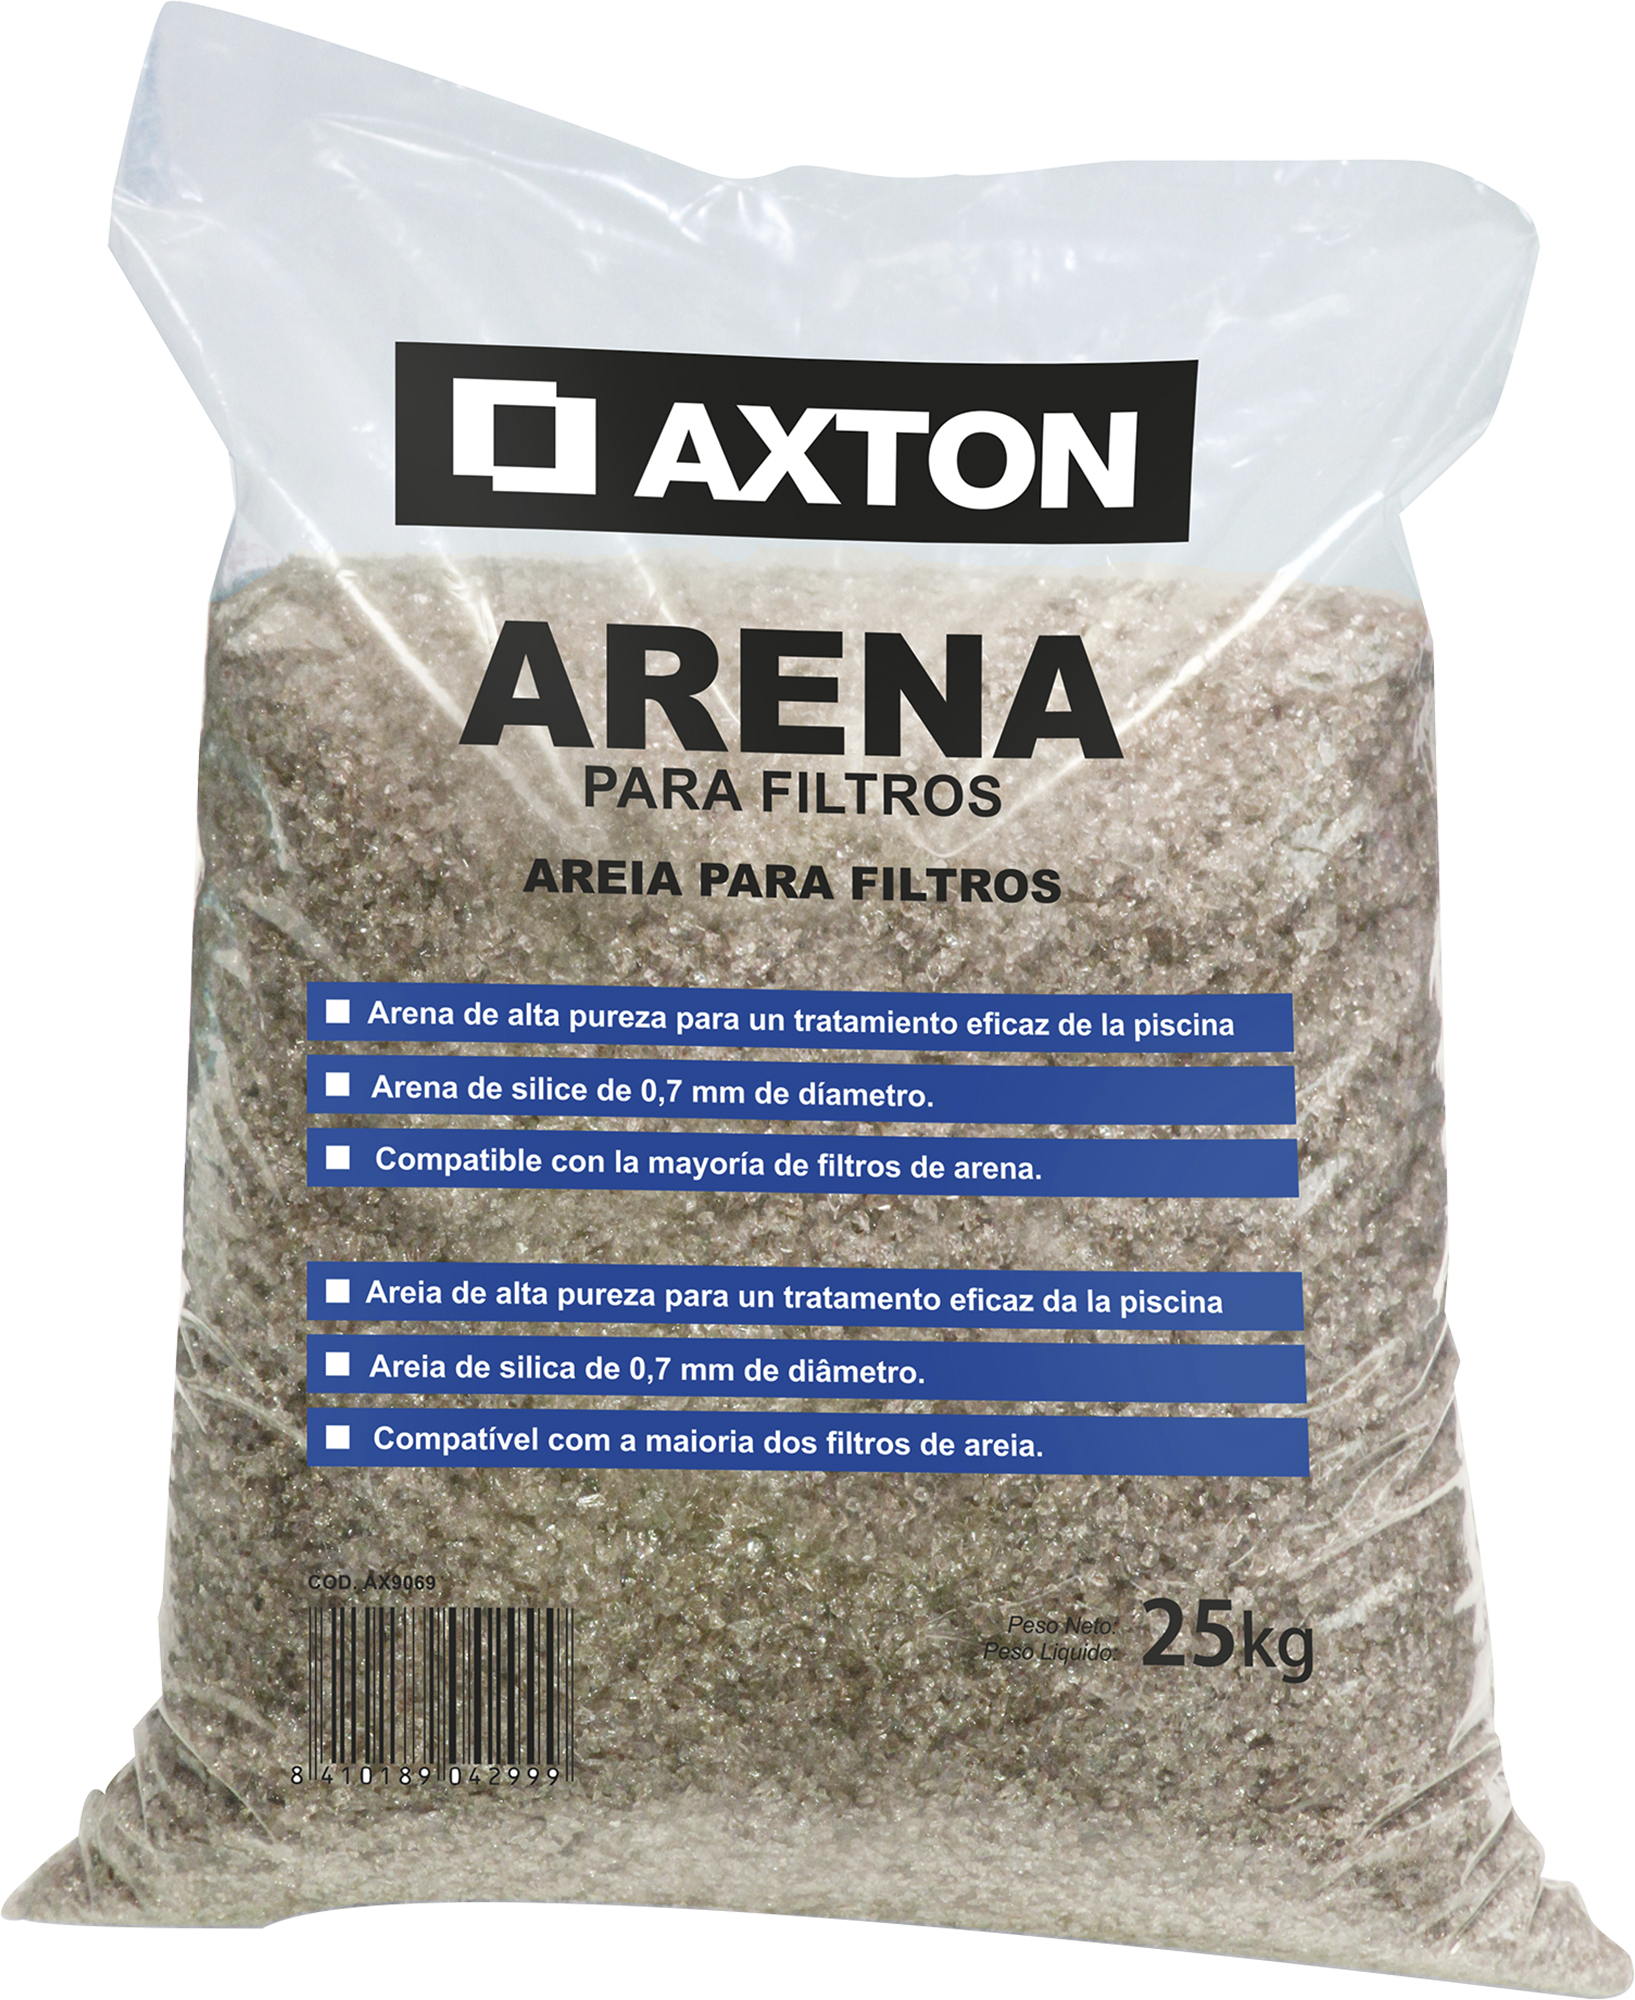 Saco de arena sílice axton 25 kg